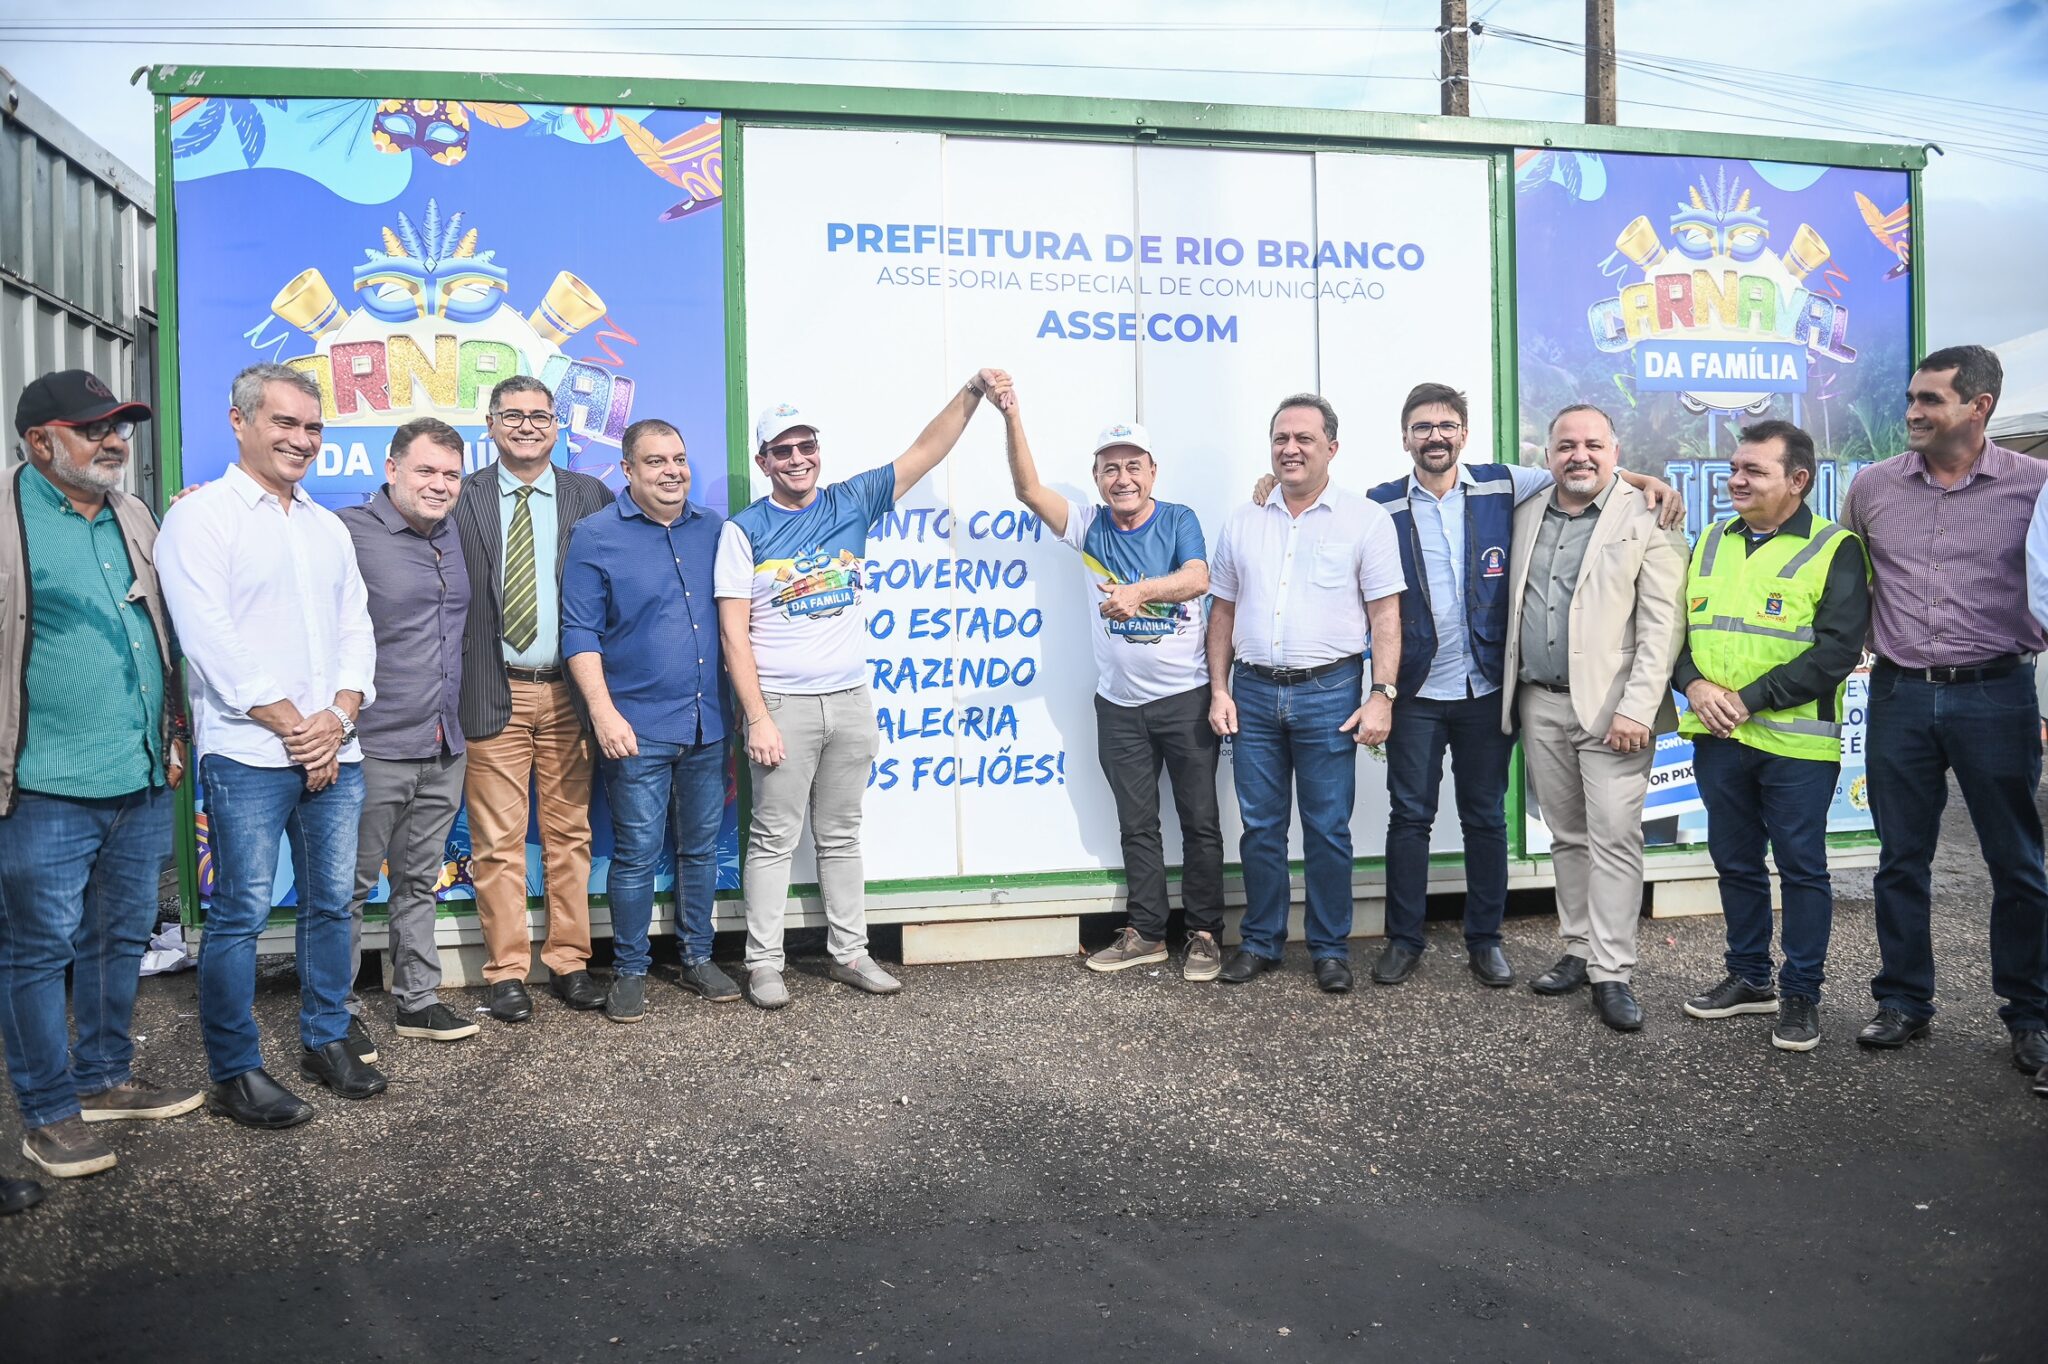 Governador Gladson Cameli e prefeito de Rio Branco visitam instalações do Carnaval da Família